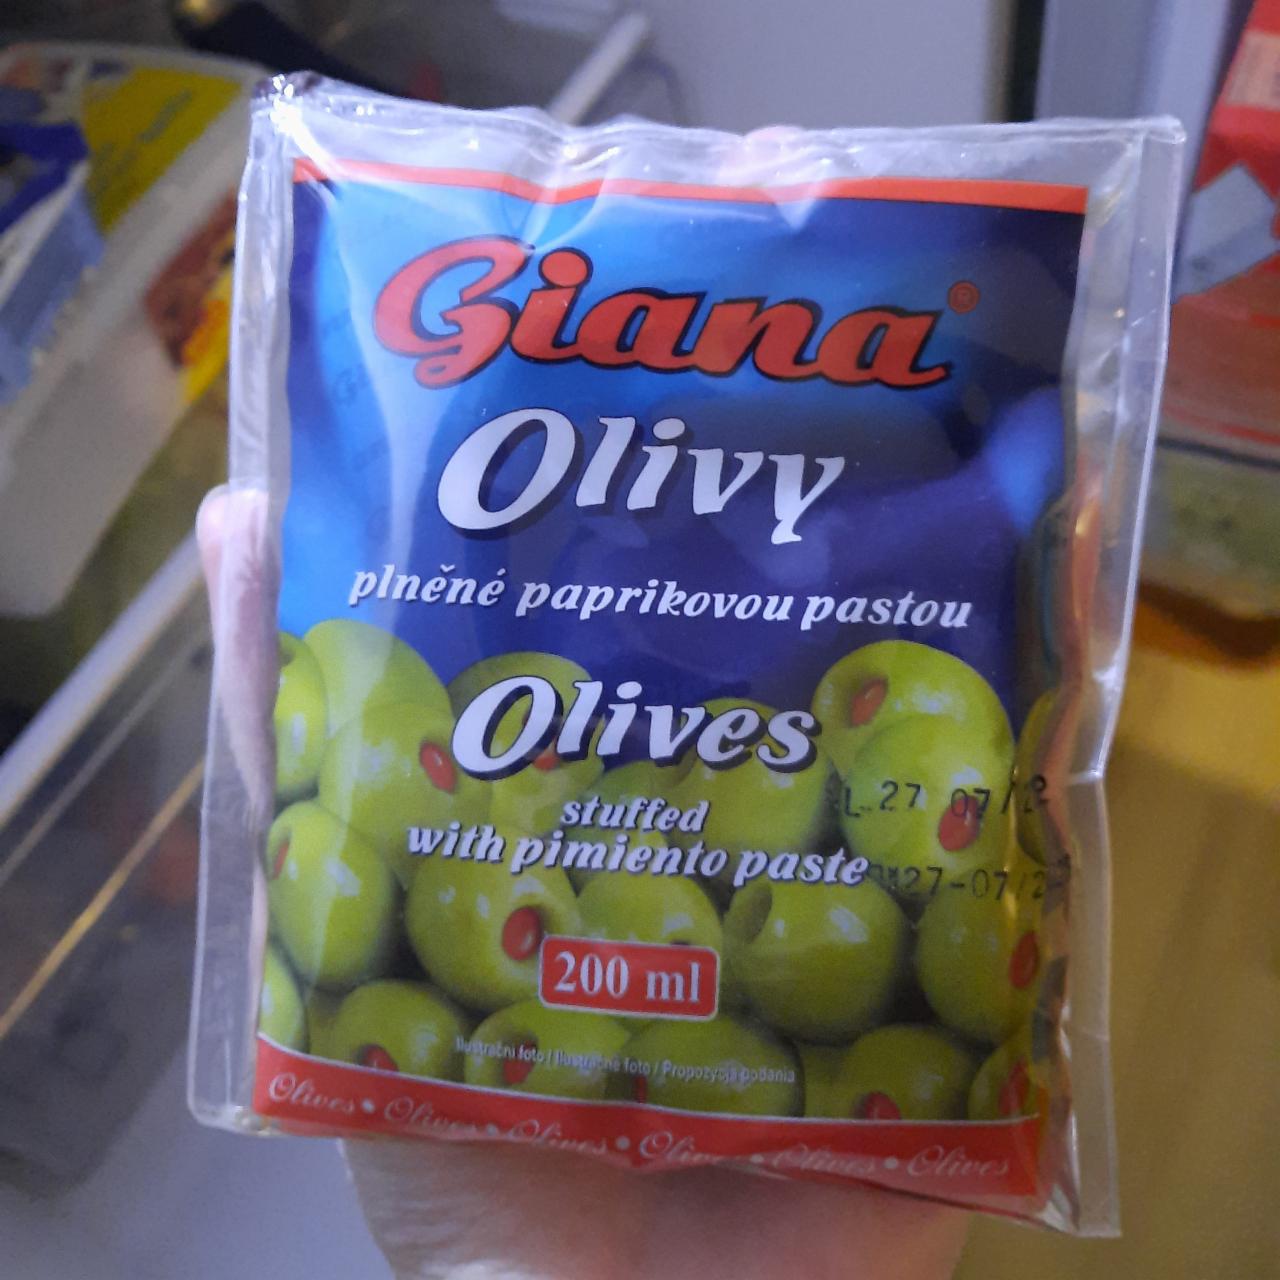 Фото - оливки с паприковой пастой Giana